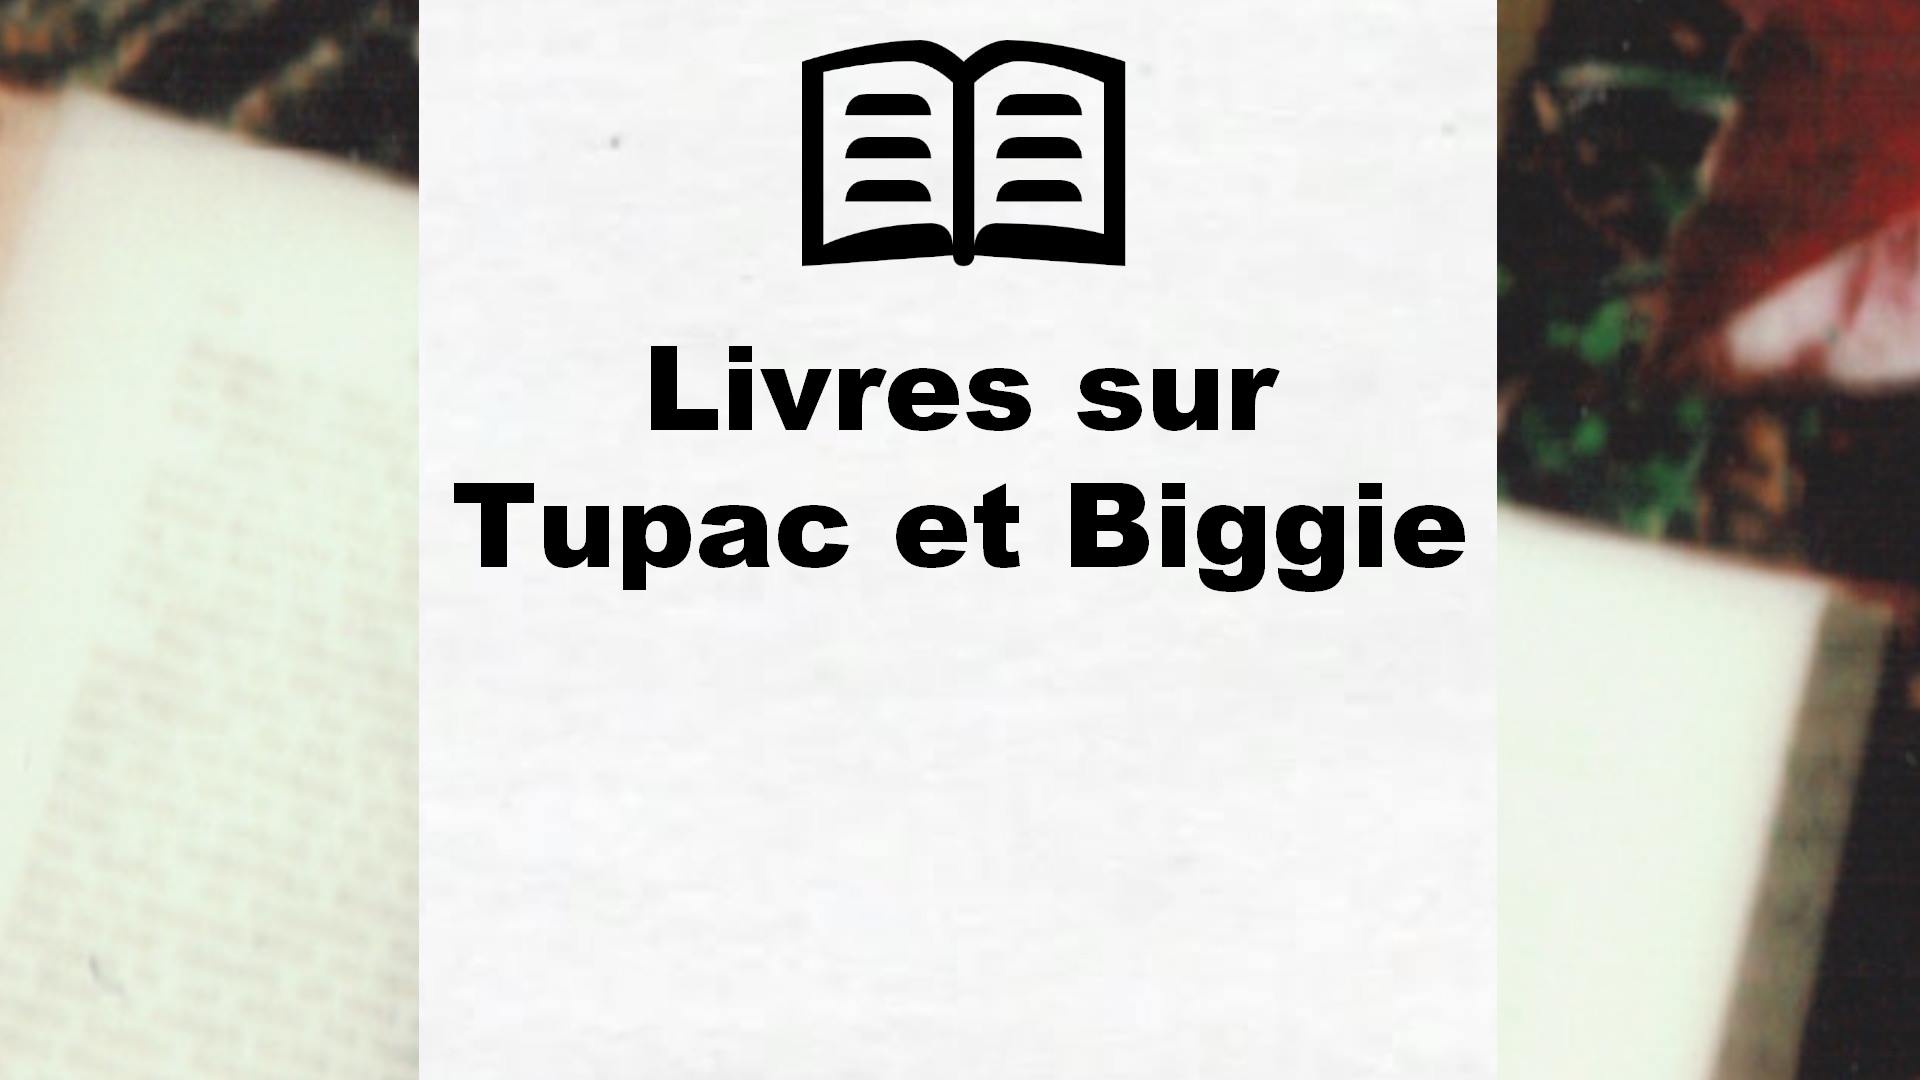 Livres sur Tupac et Biggie